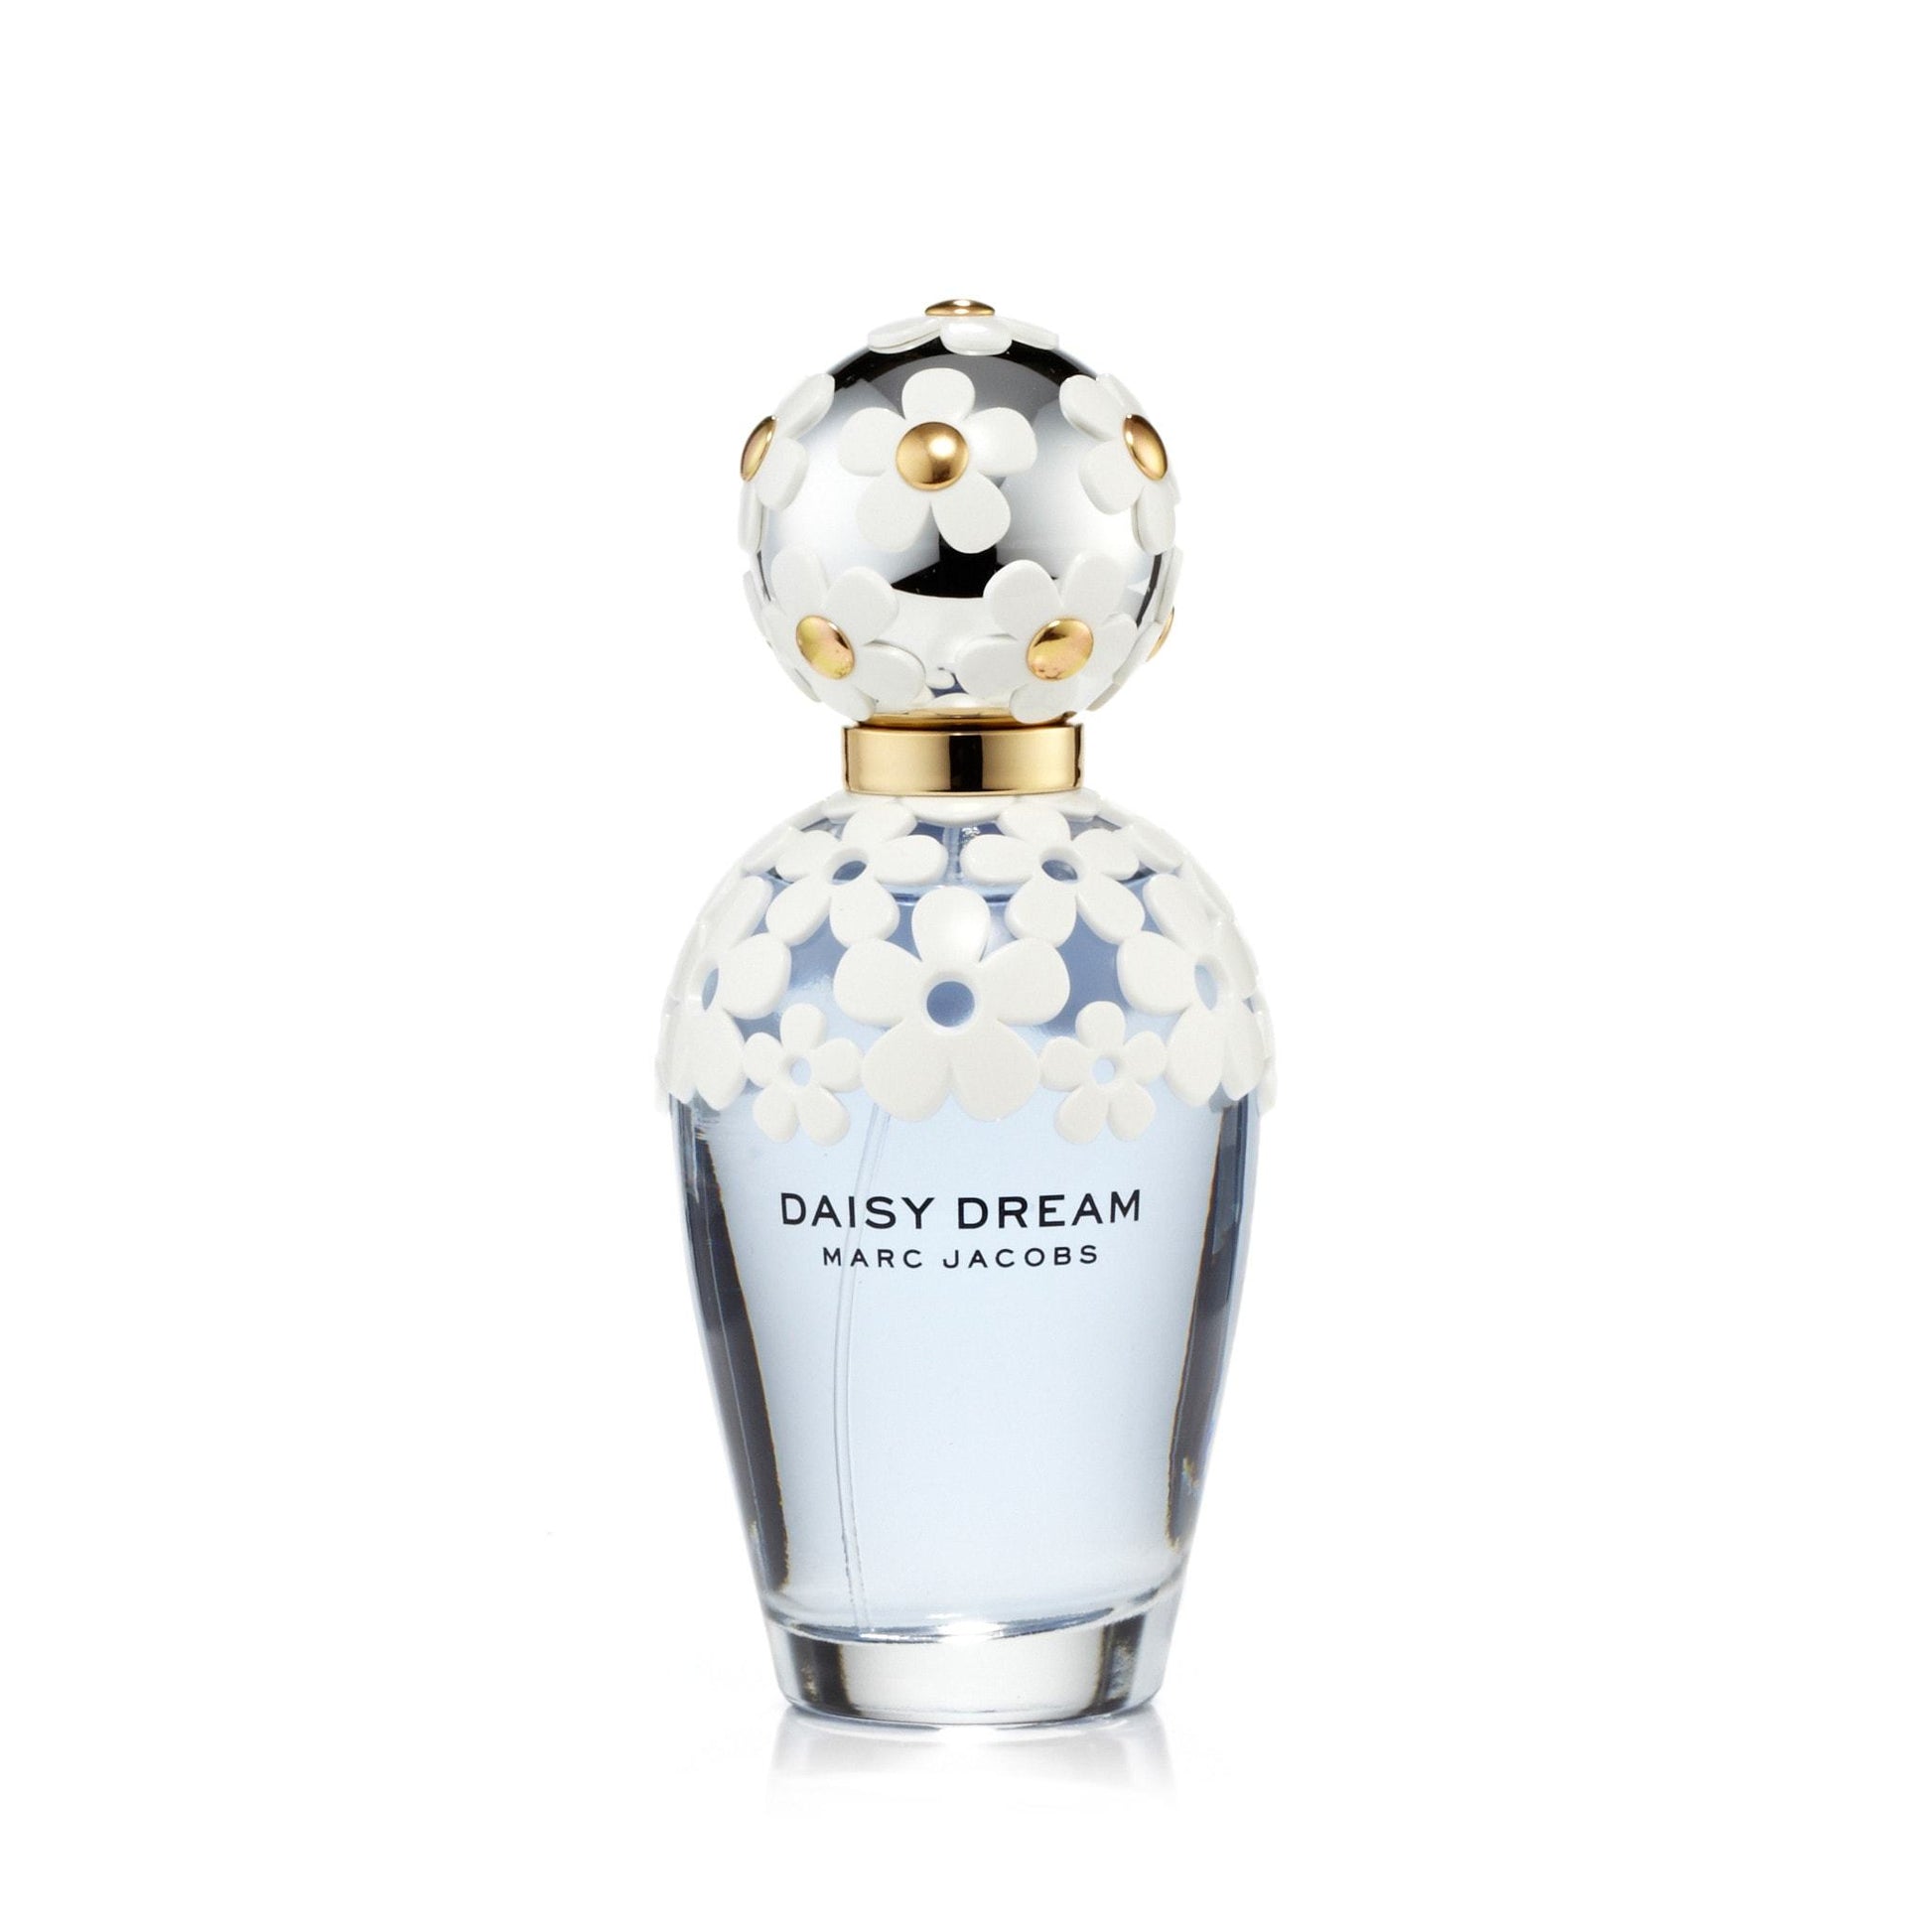 Daisy Dream Eau de Toilette Spray for Women by Marc Jacobs, Product image 6